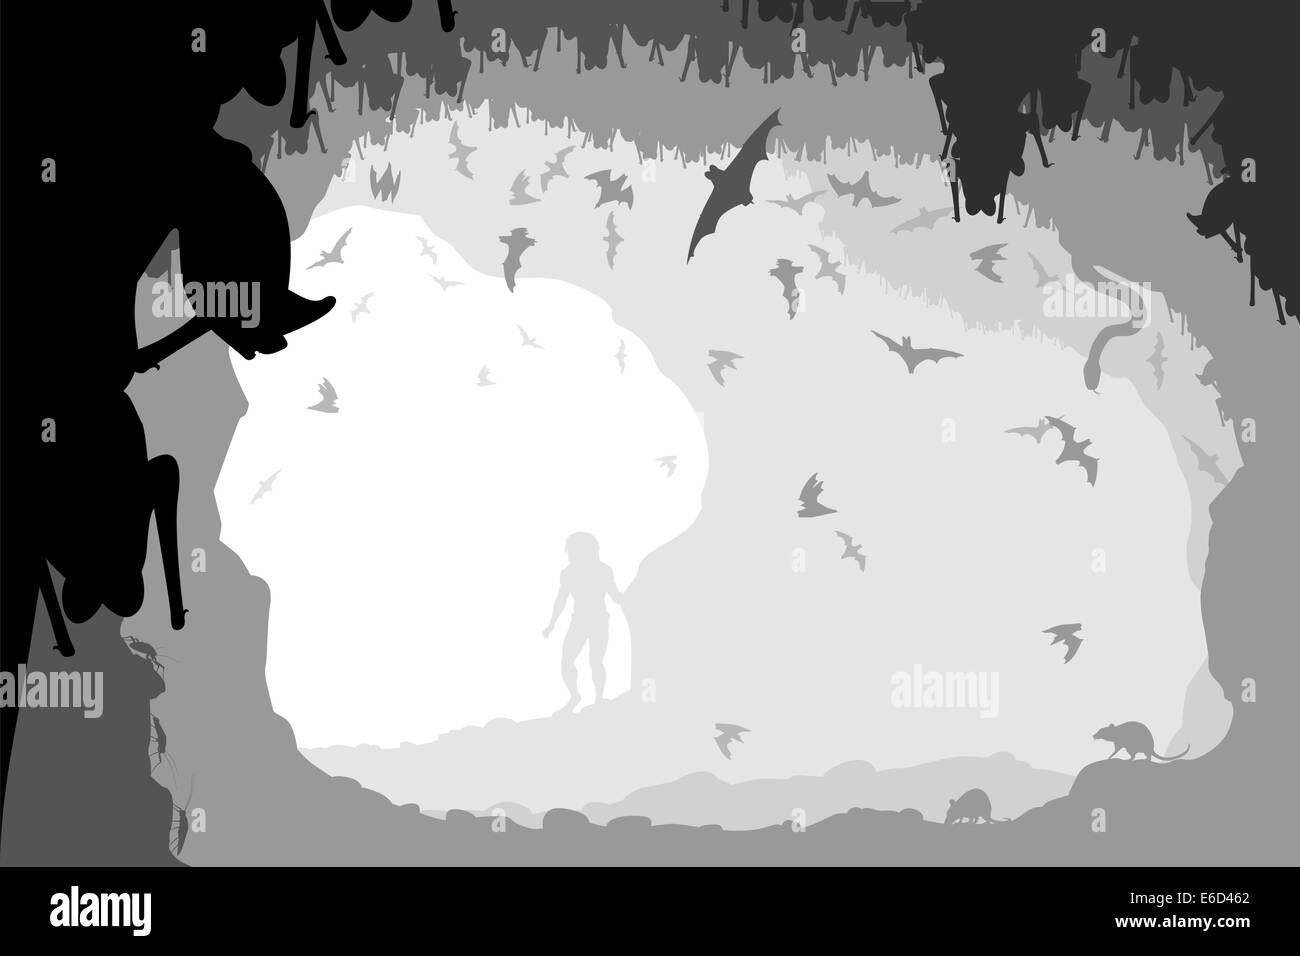 Illustration vectorielle modifiable d'un homme à l'embouchure d'une grotte de chauves-souris avec tous les chiffres en tant qu'objets séparés Illustration de Vecteur